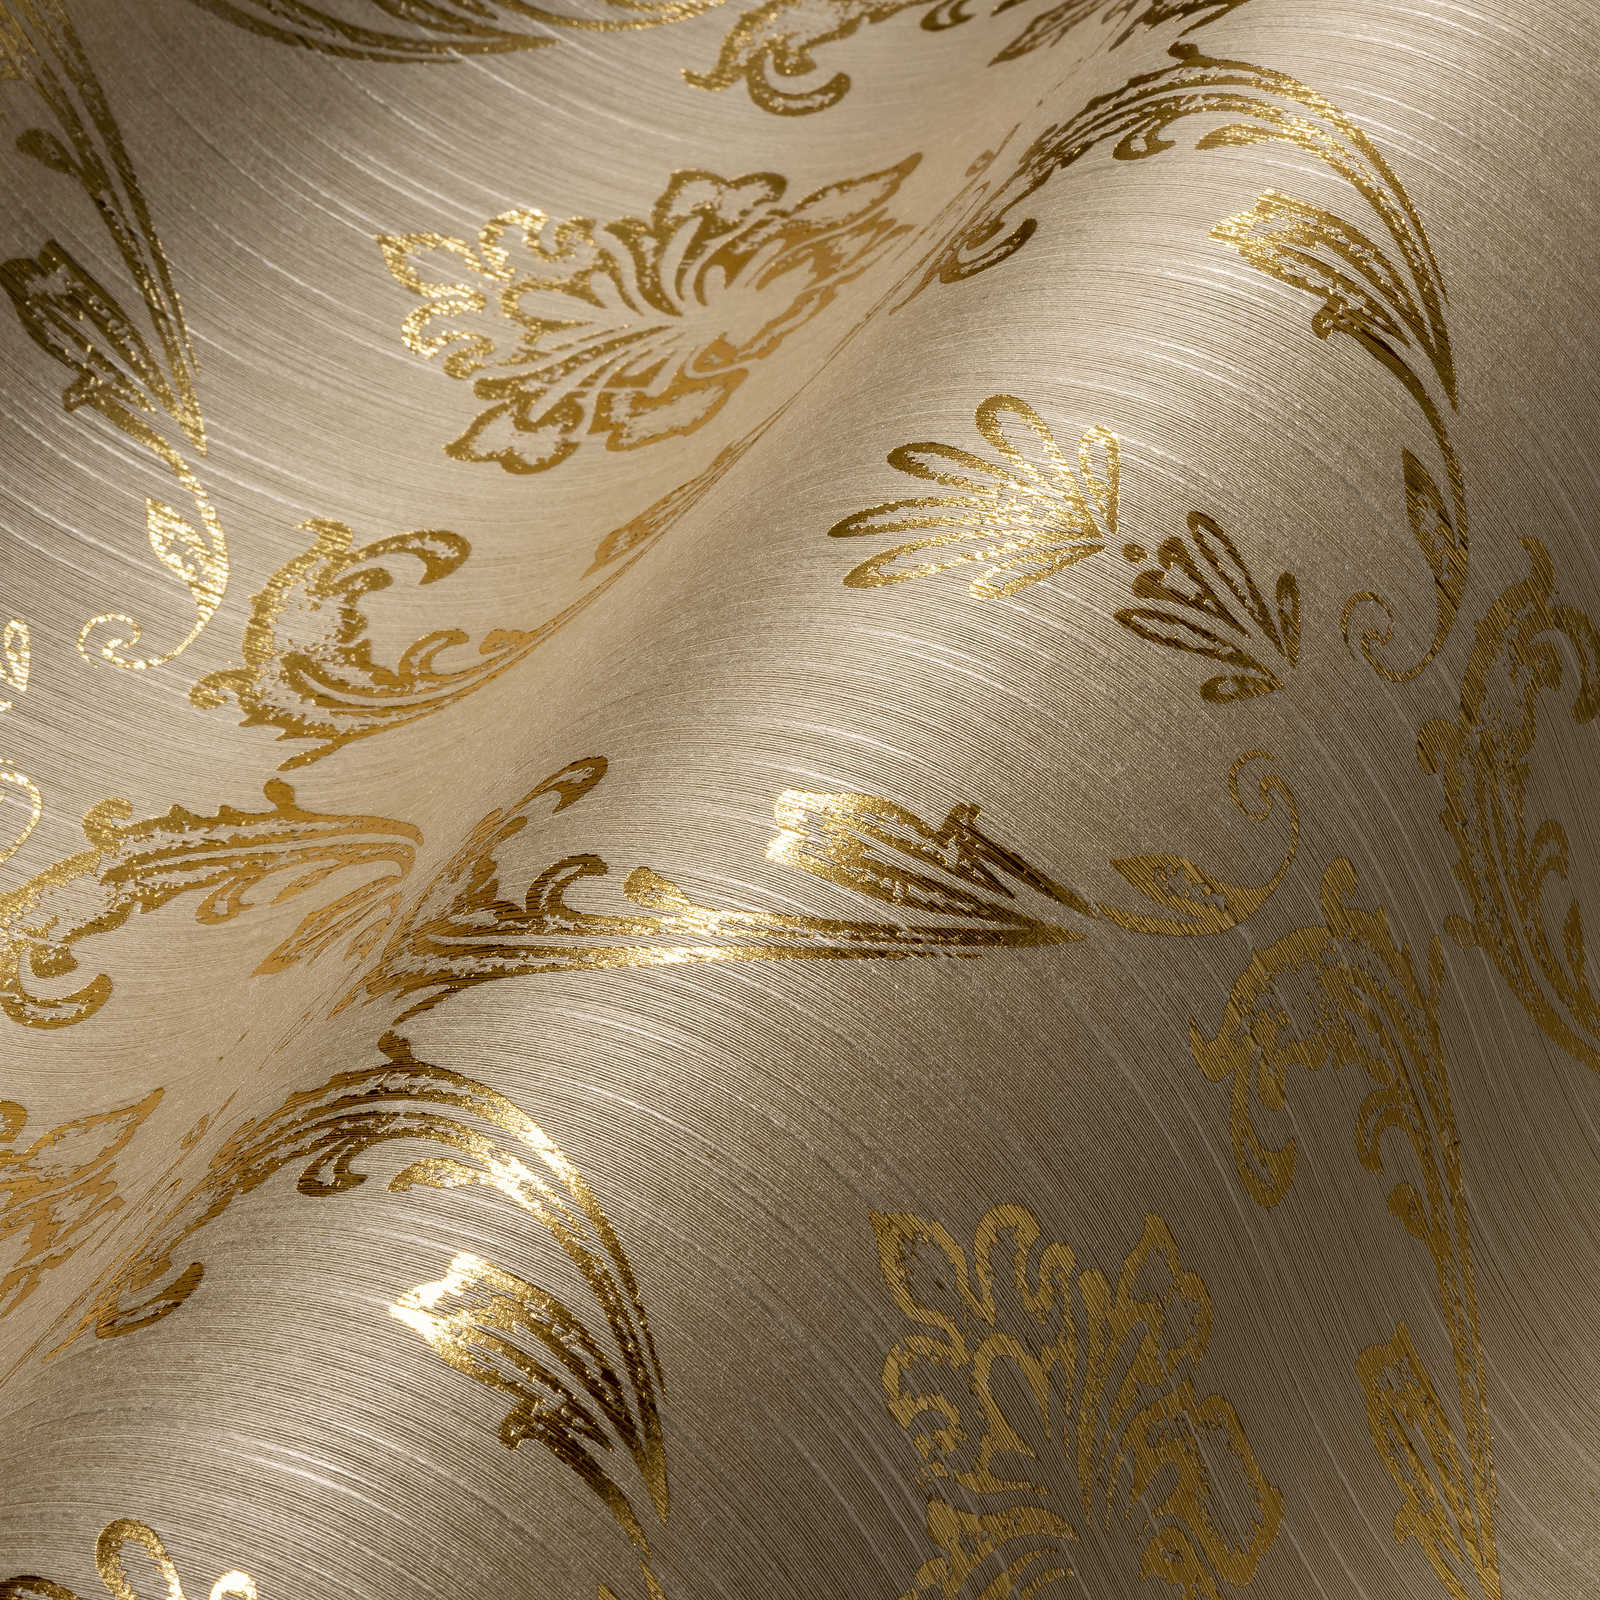             Papier peint ornemental avec éléments floraux dorés - or, beige
        